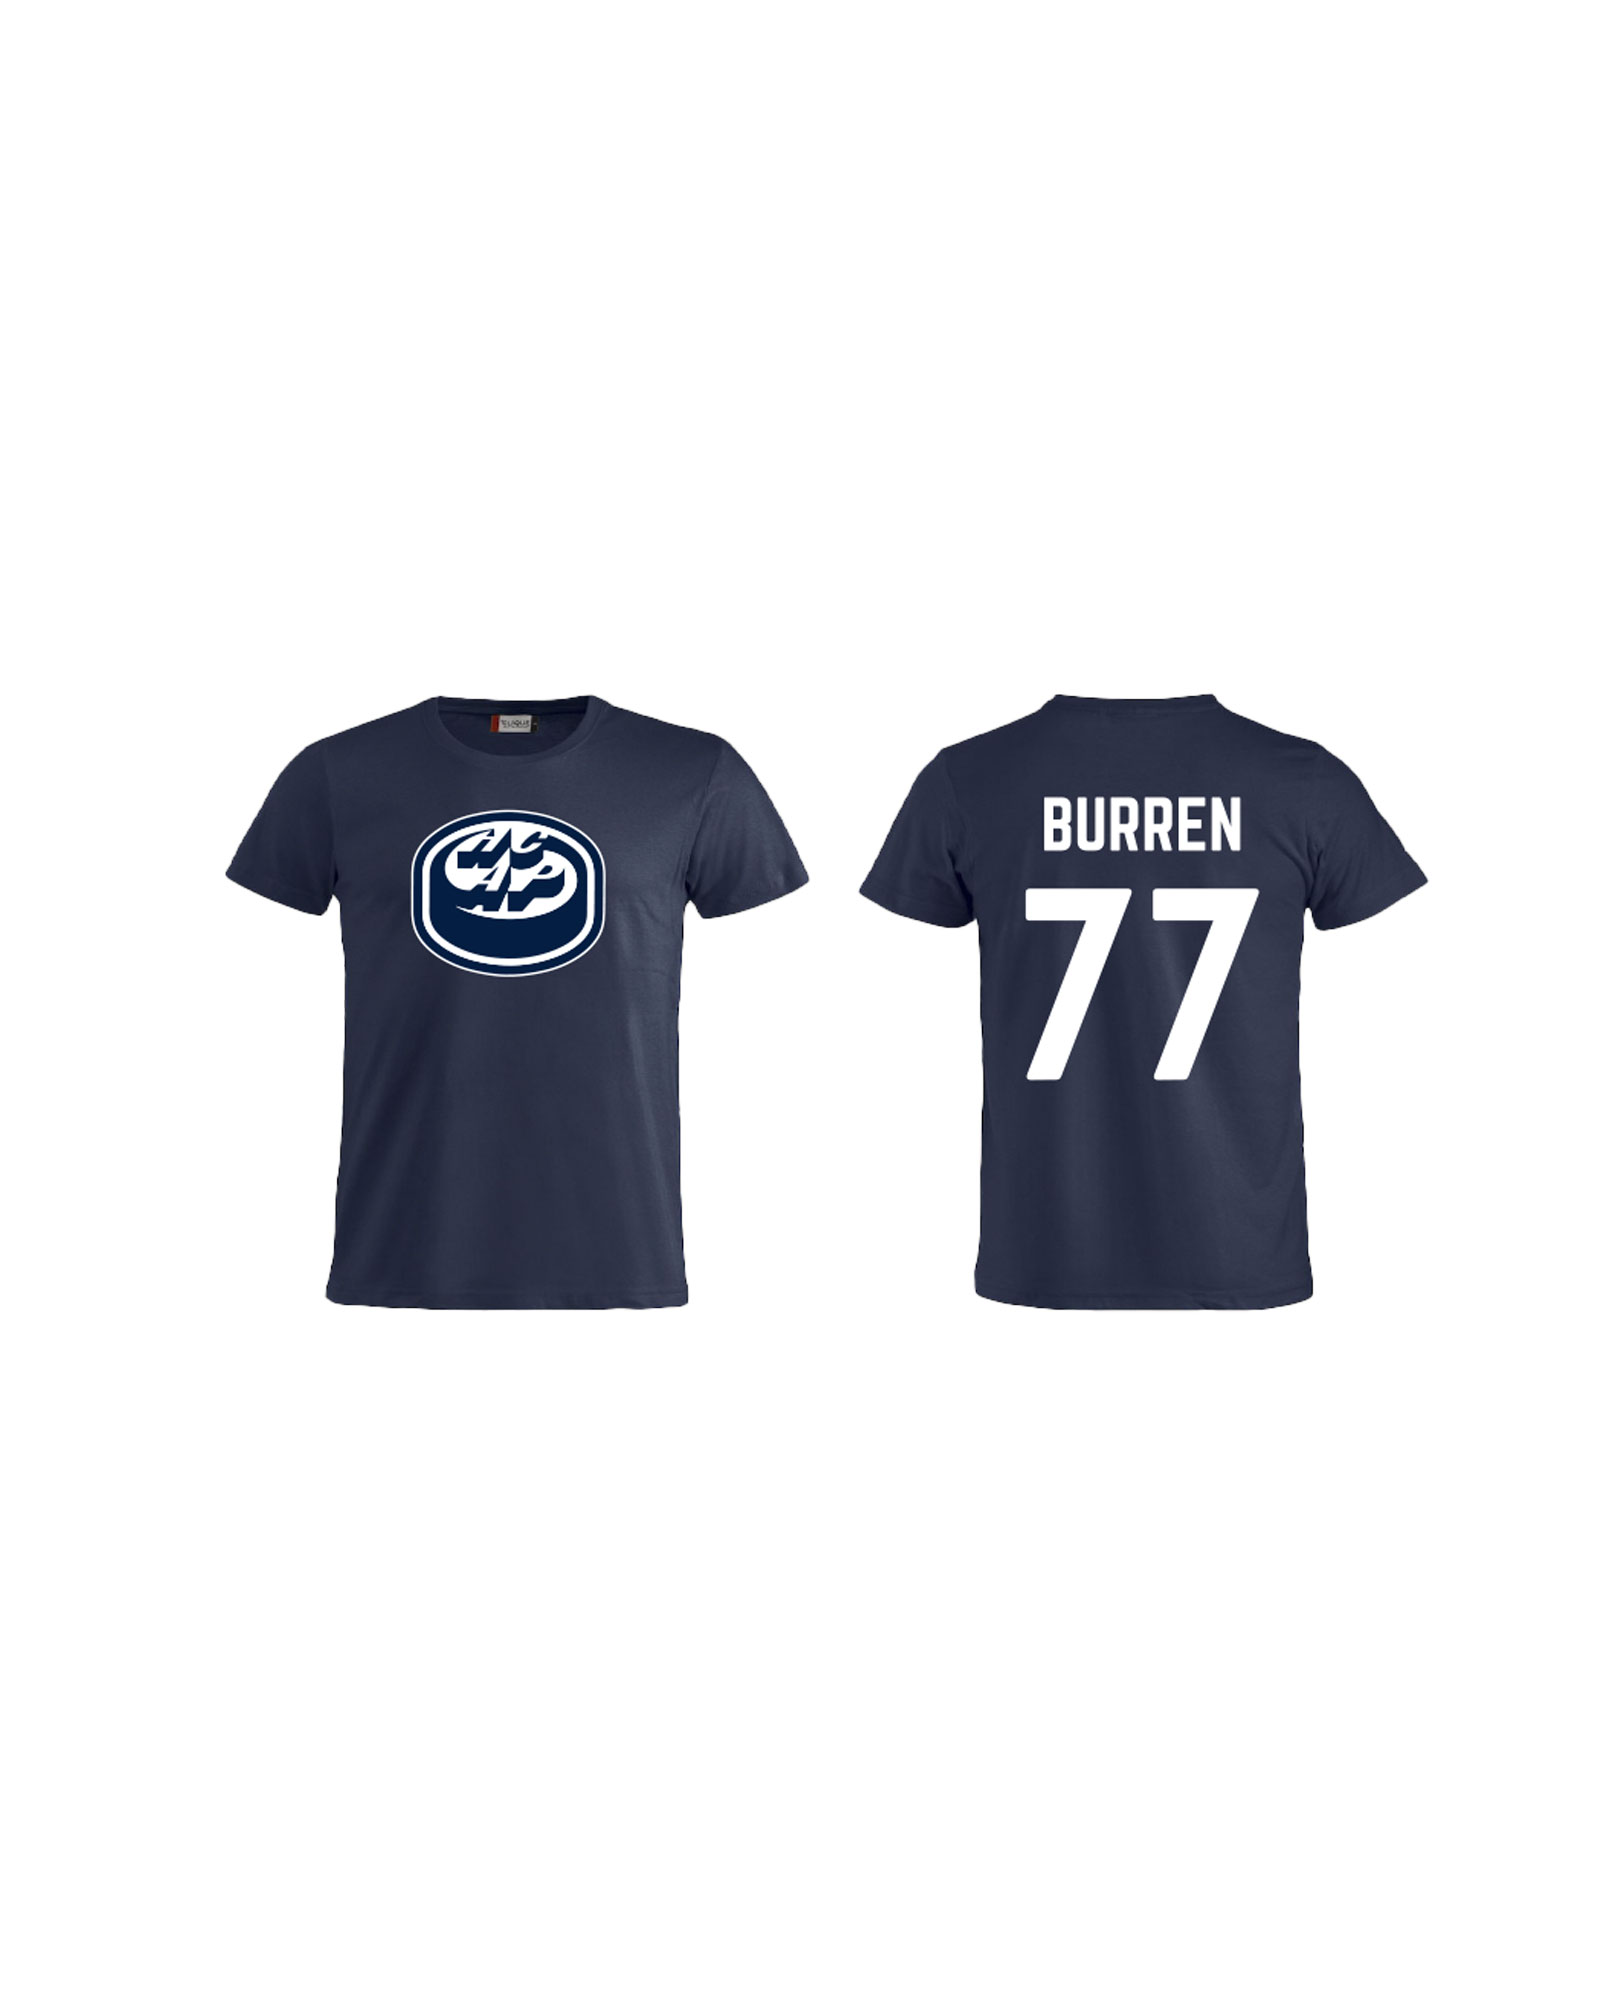 T-shirt #77 Burren